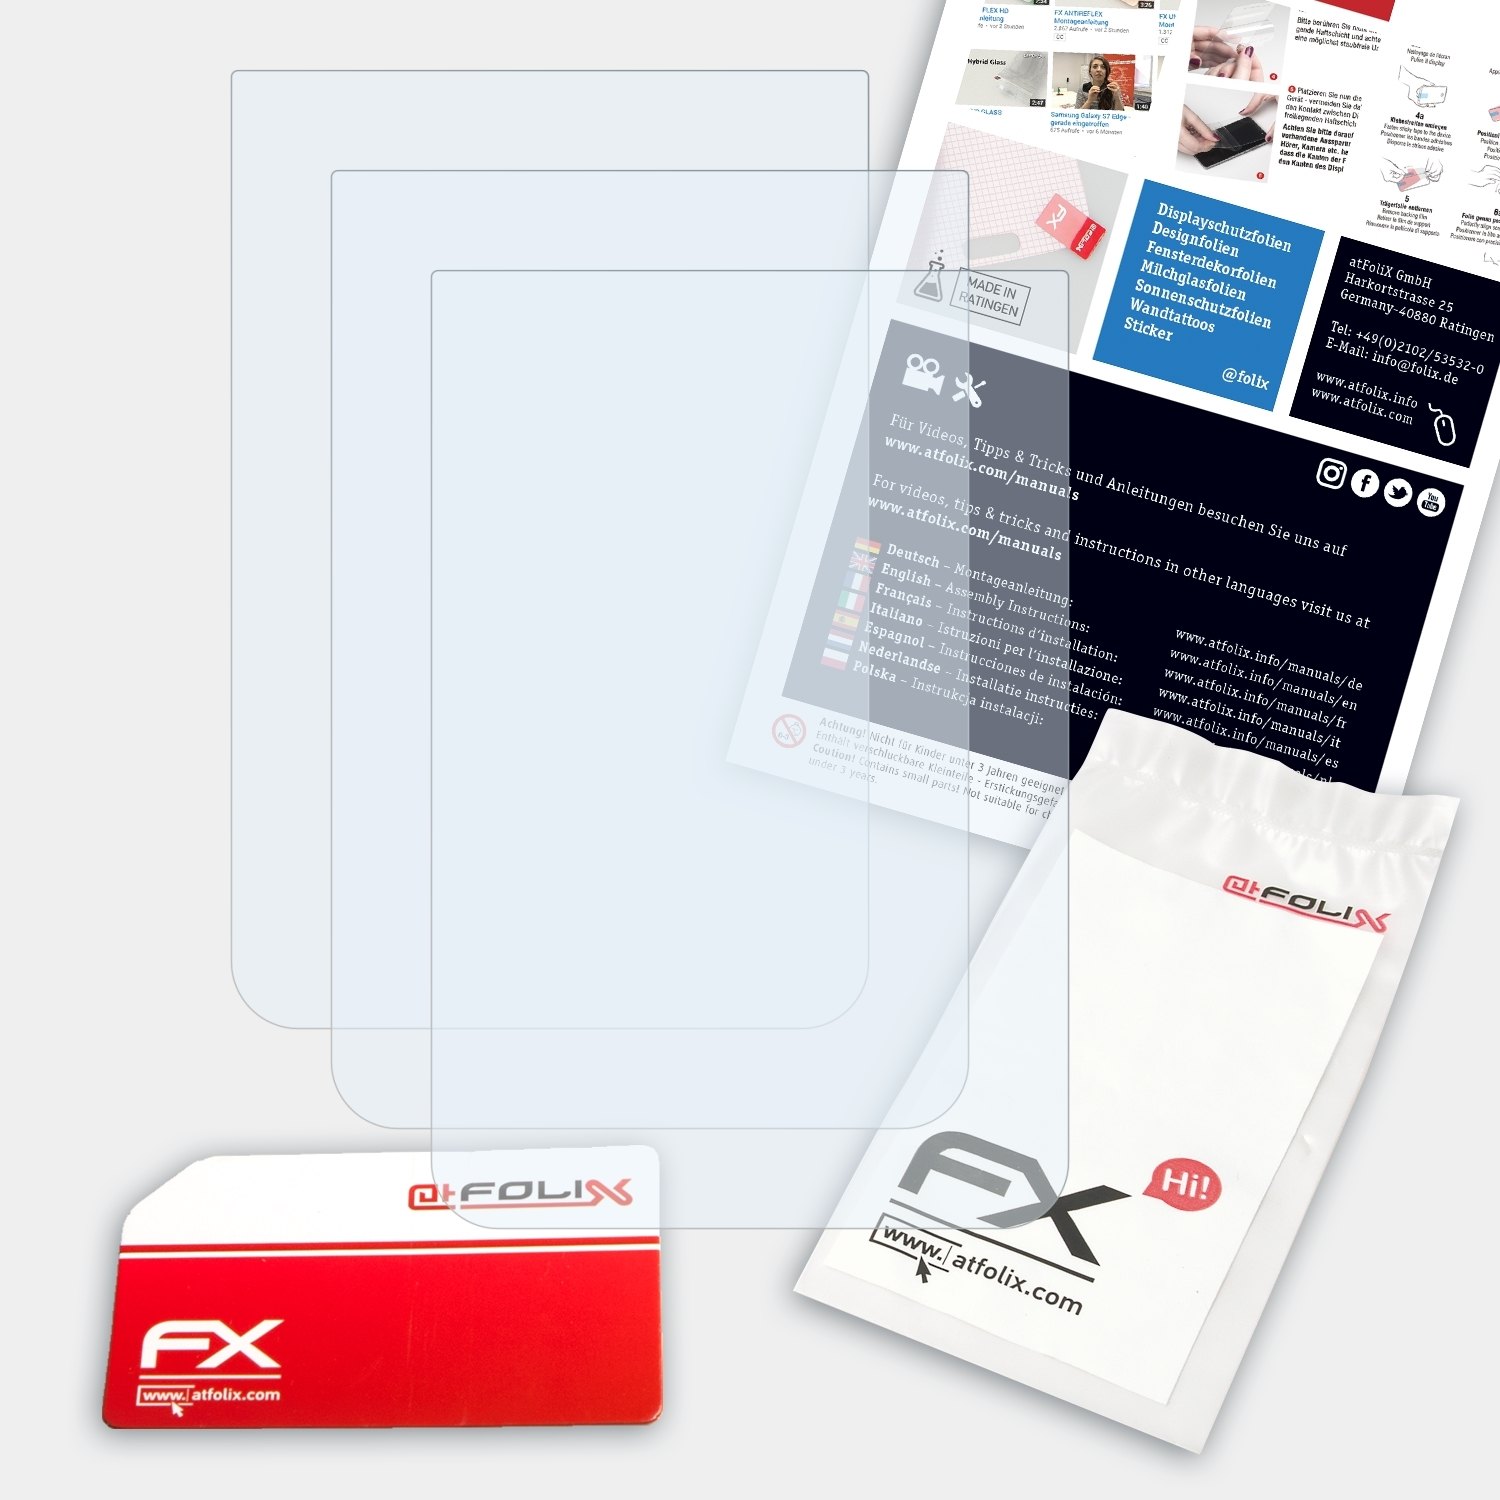 ATFOLIX Casio Exilim EX-FR100) Displayschutz(für 3x FX-Clear